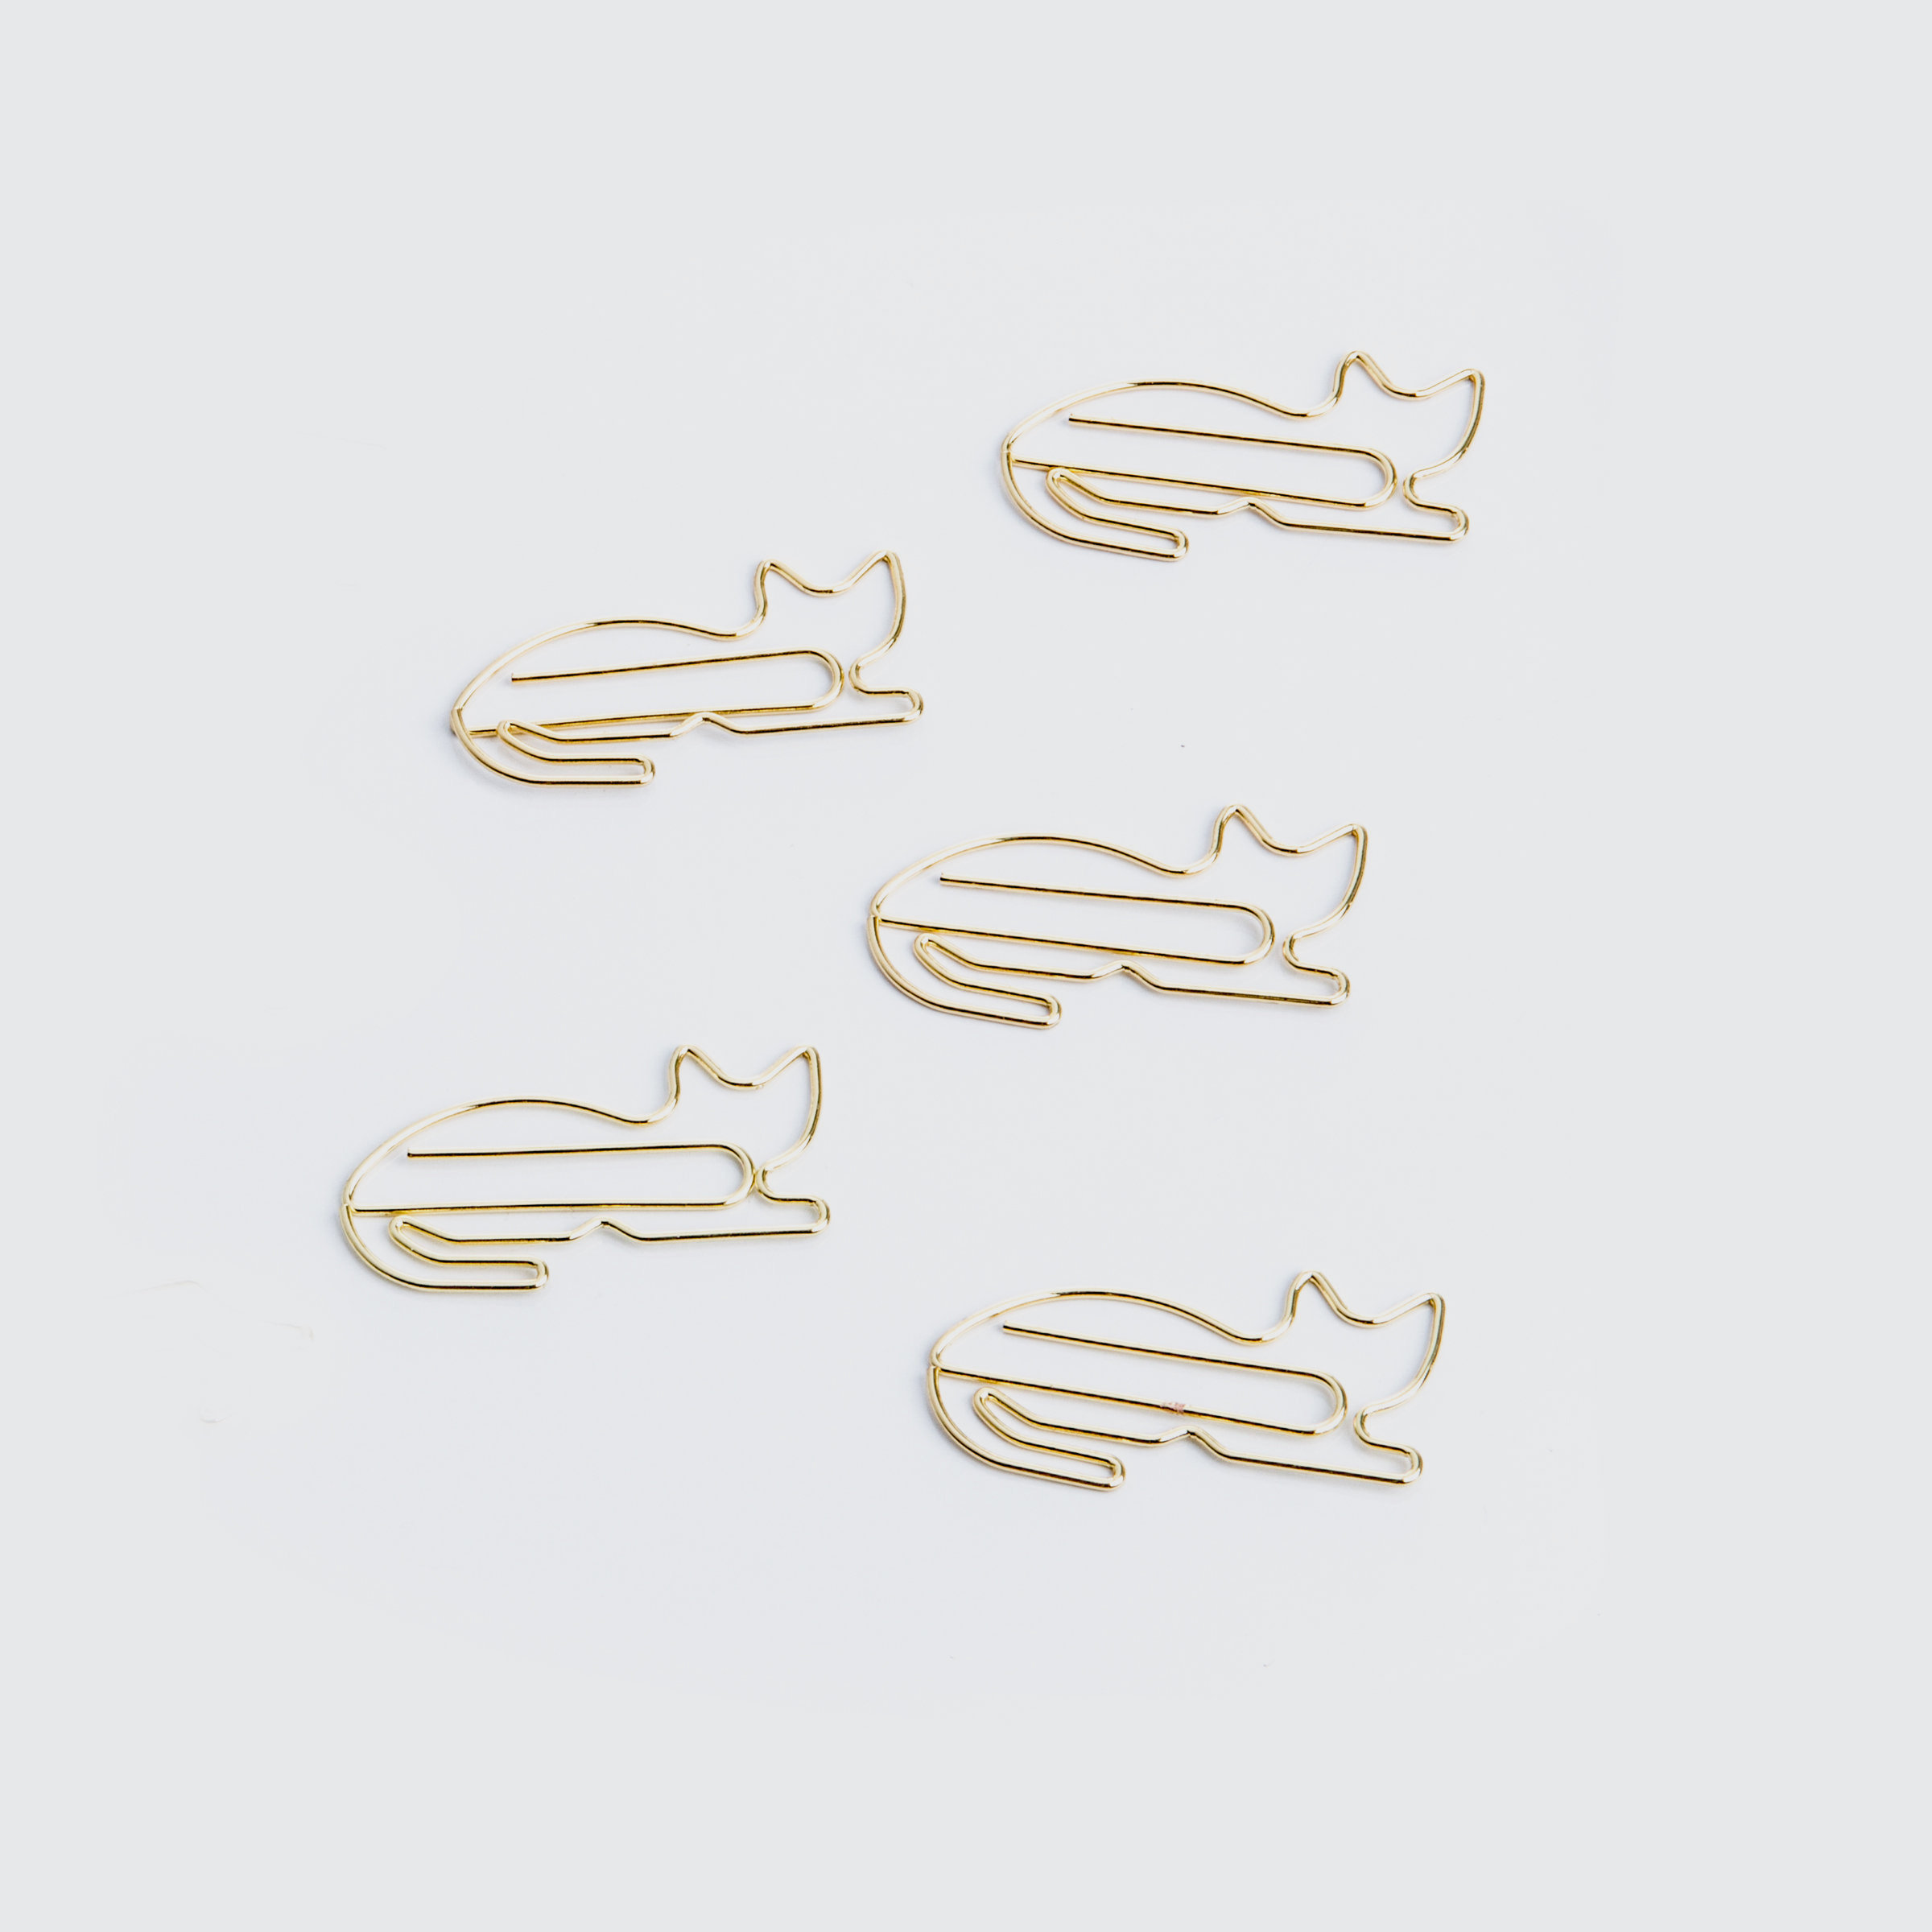 Cute gold cat paper clips